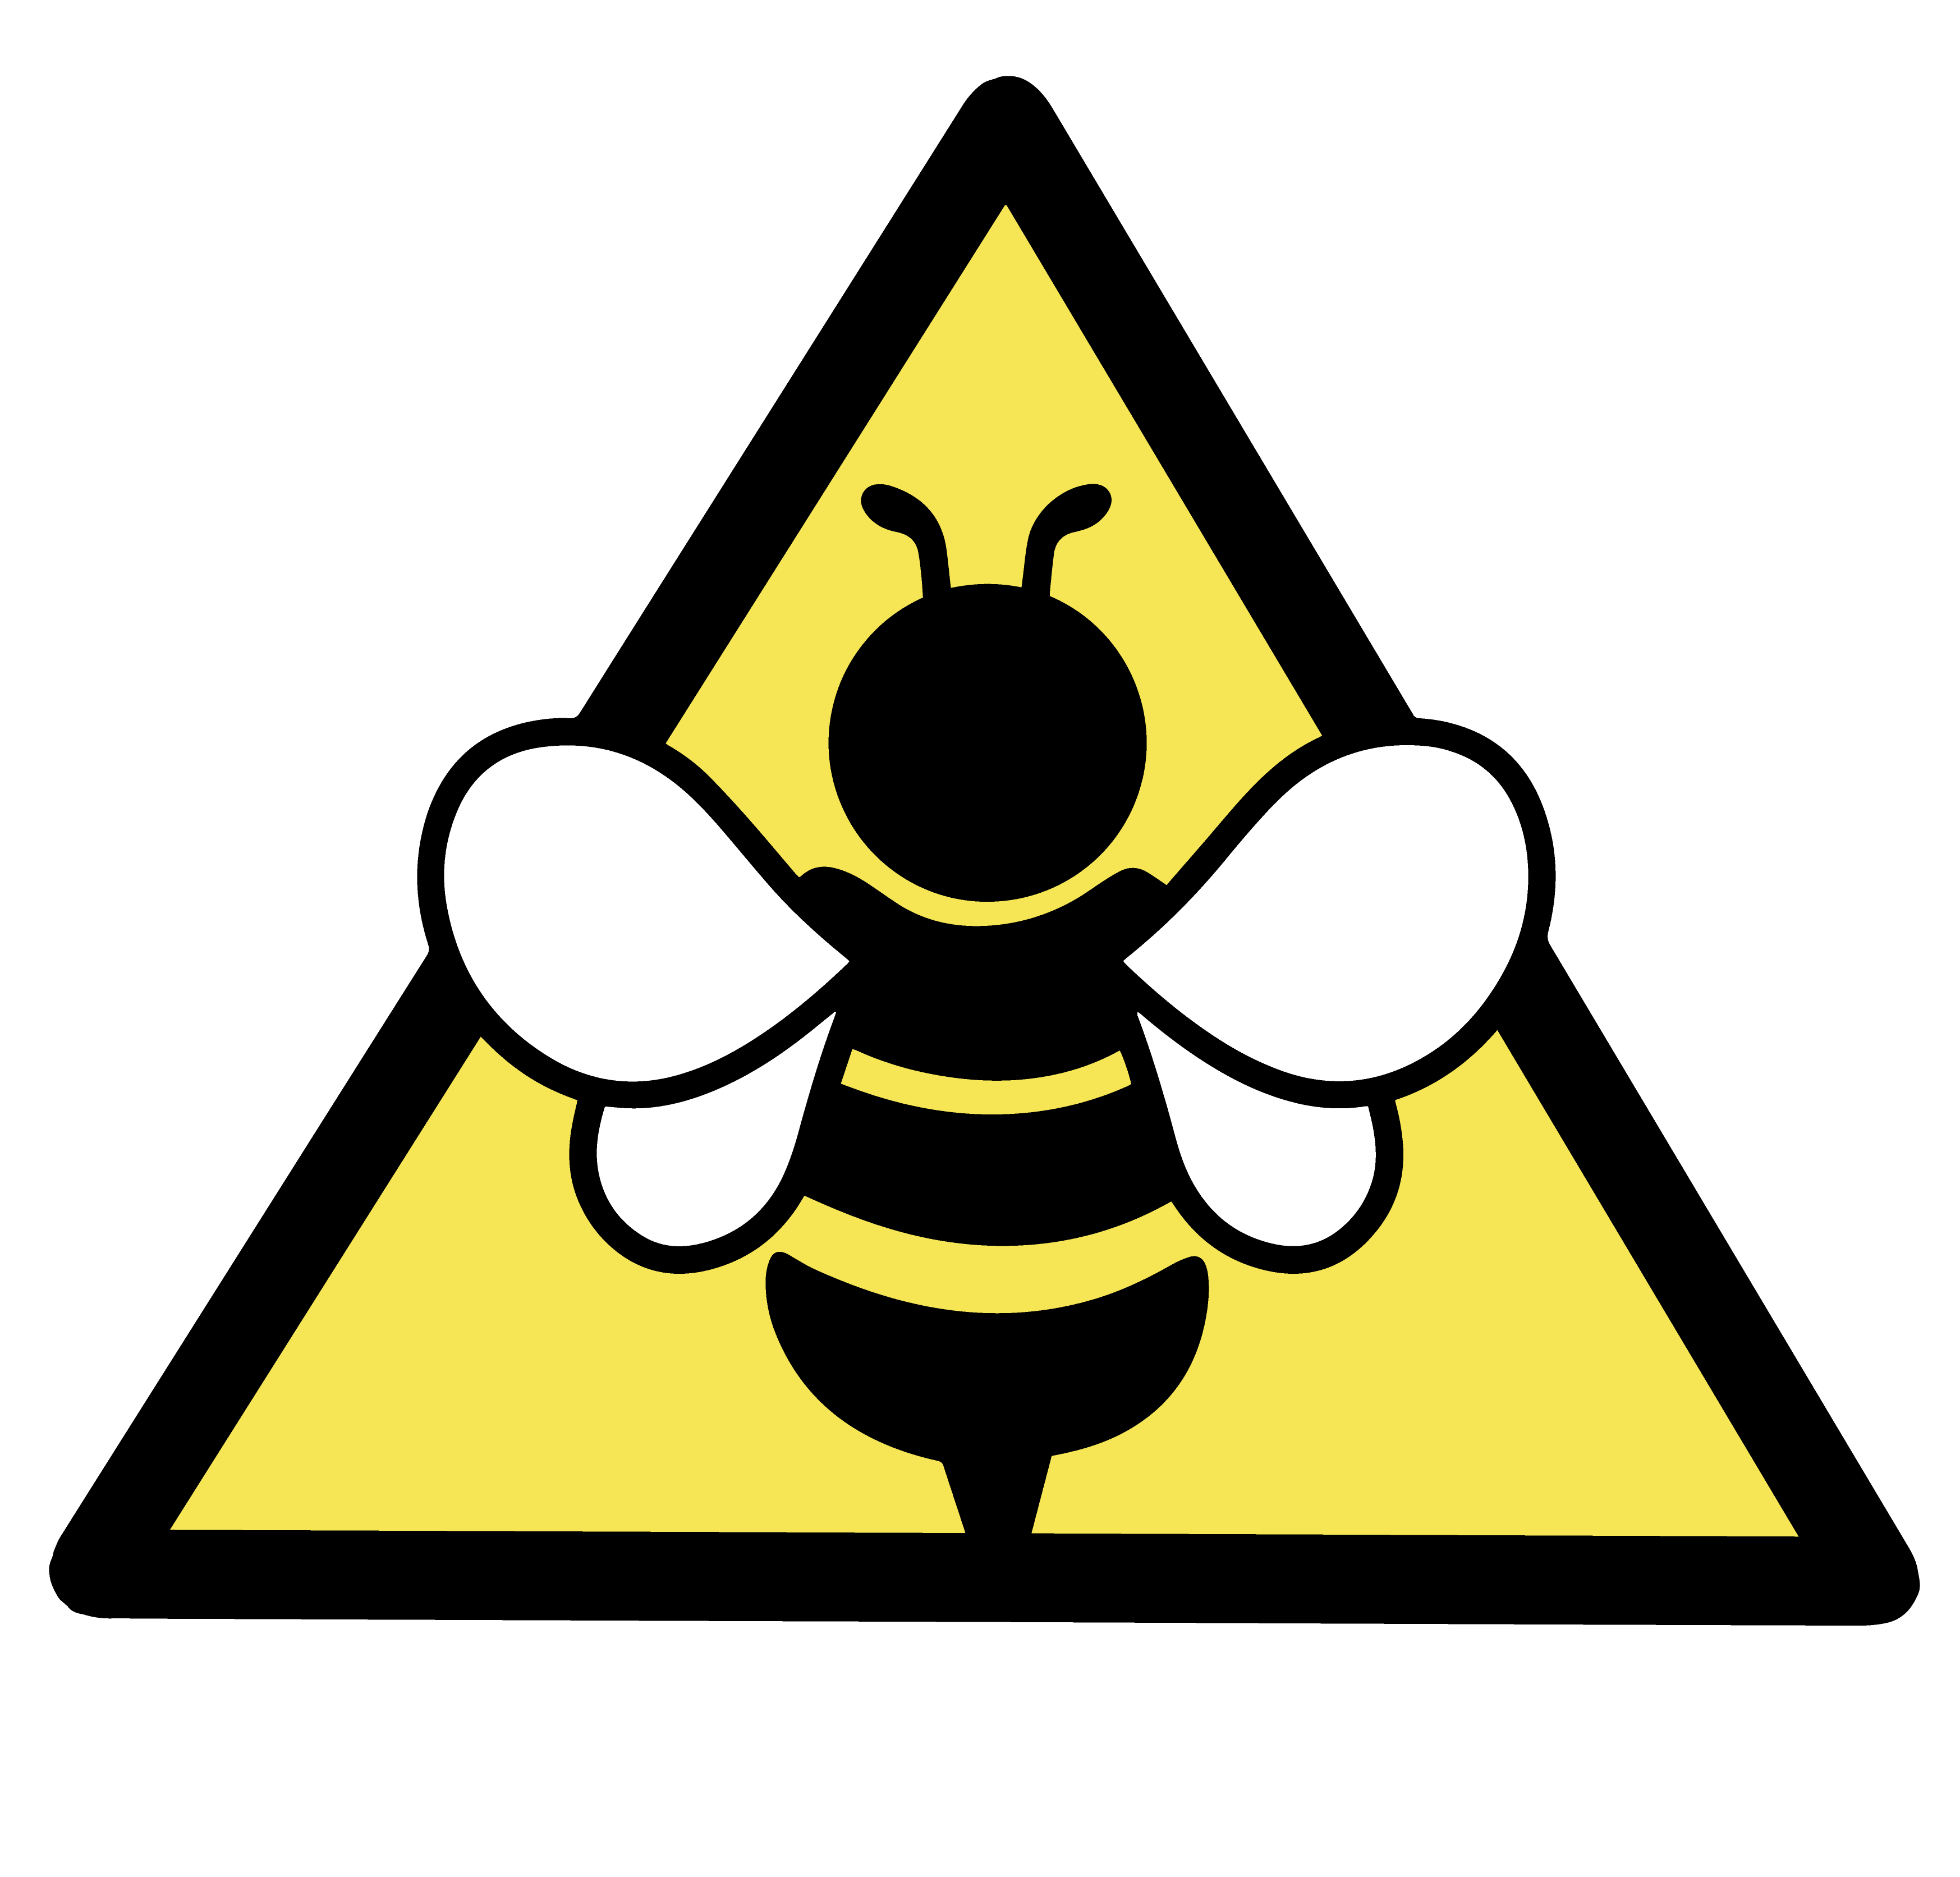 OBYC Hazmat Division